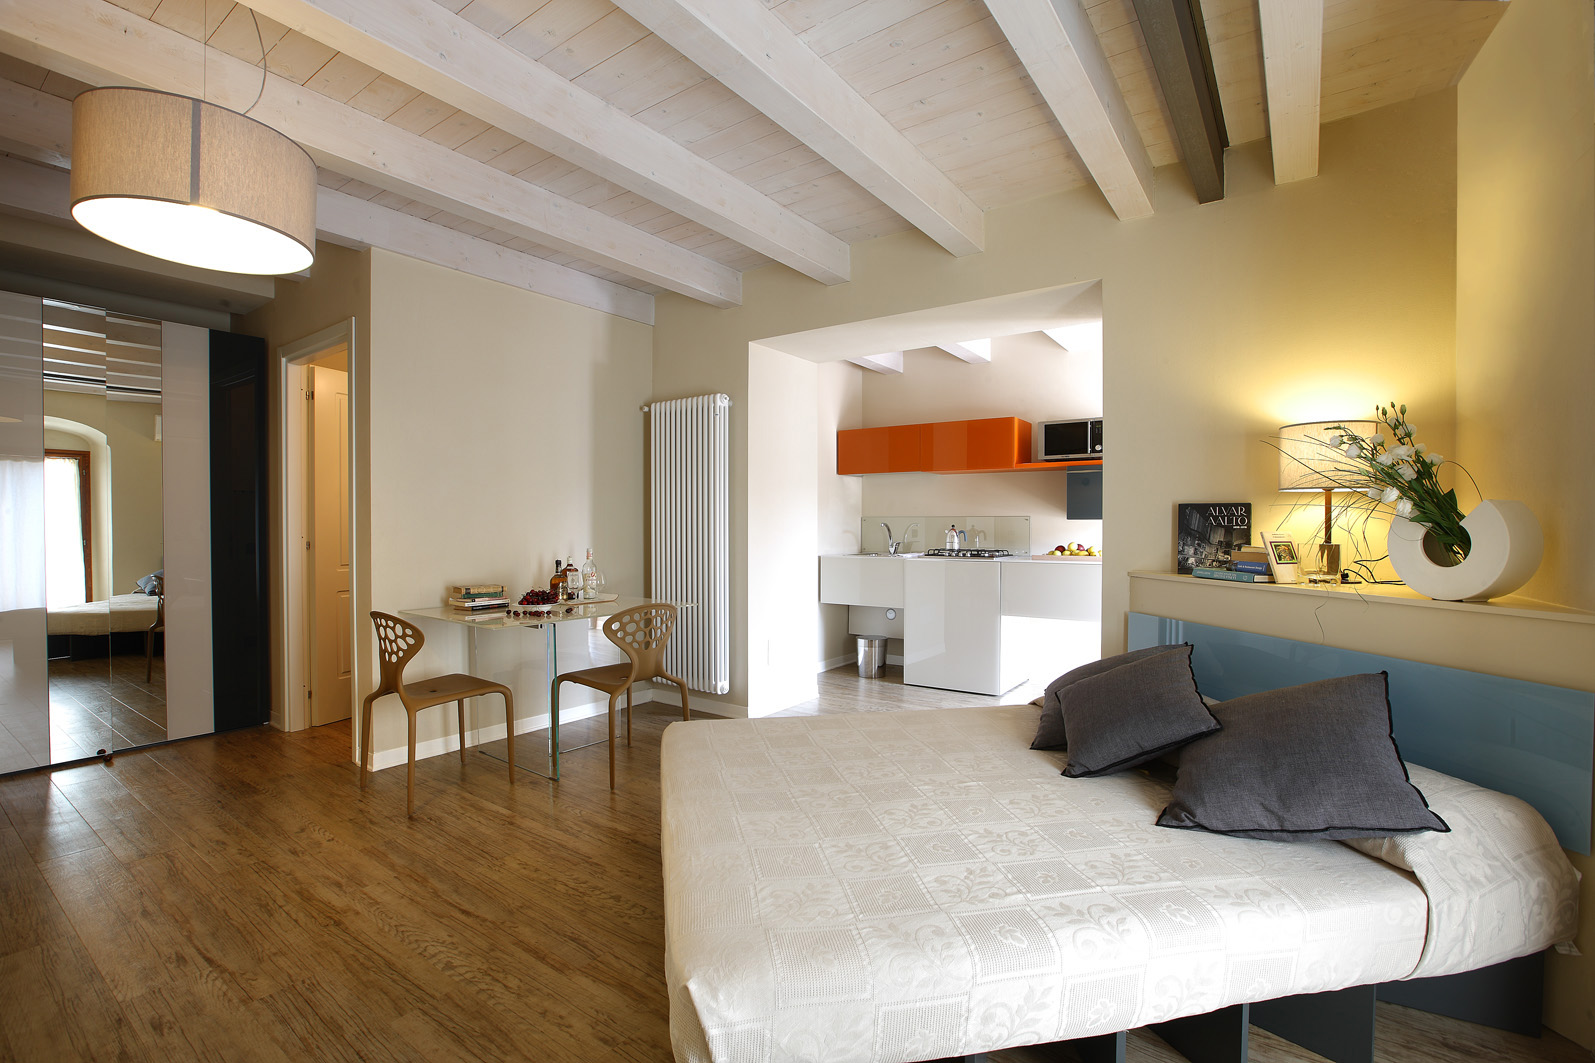 Corte San Luca Apartments - Bardolino. Vacanze - Lago di Garda